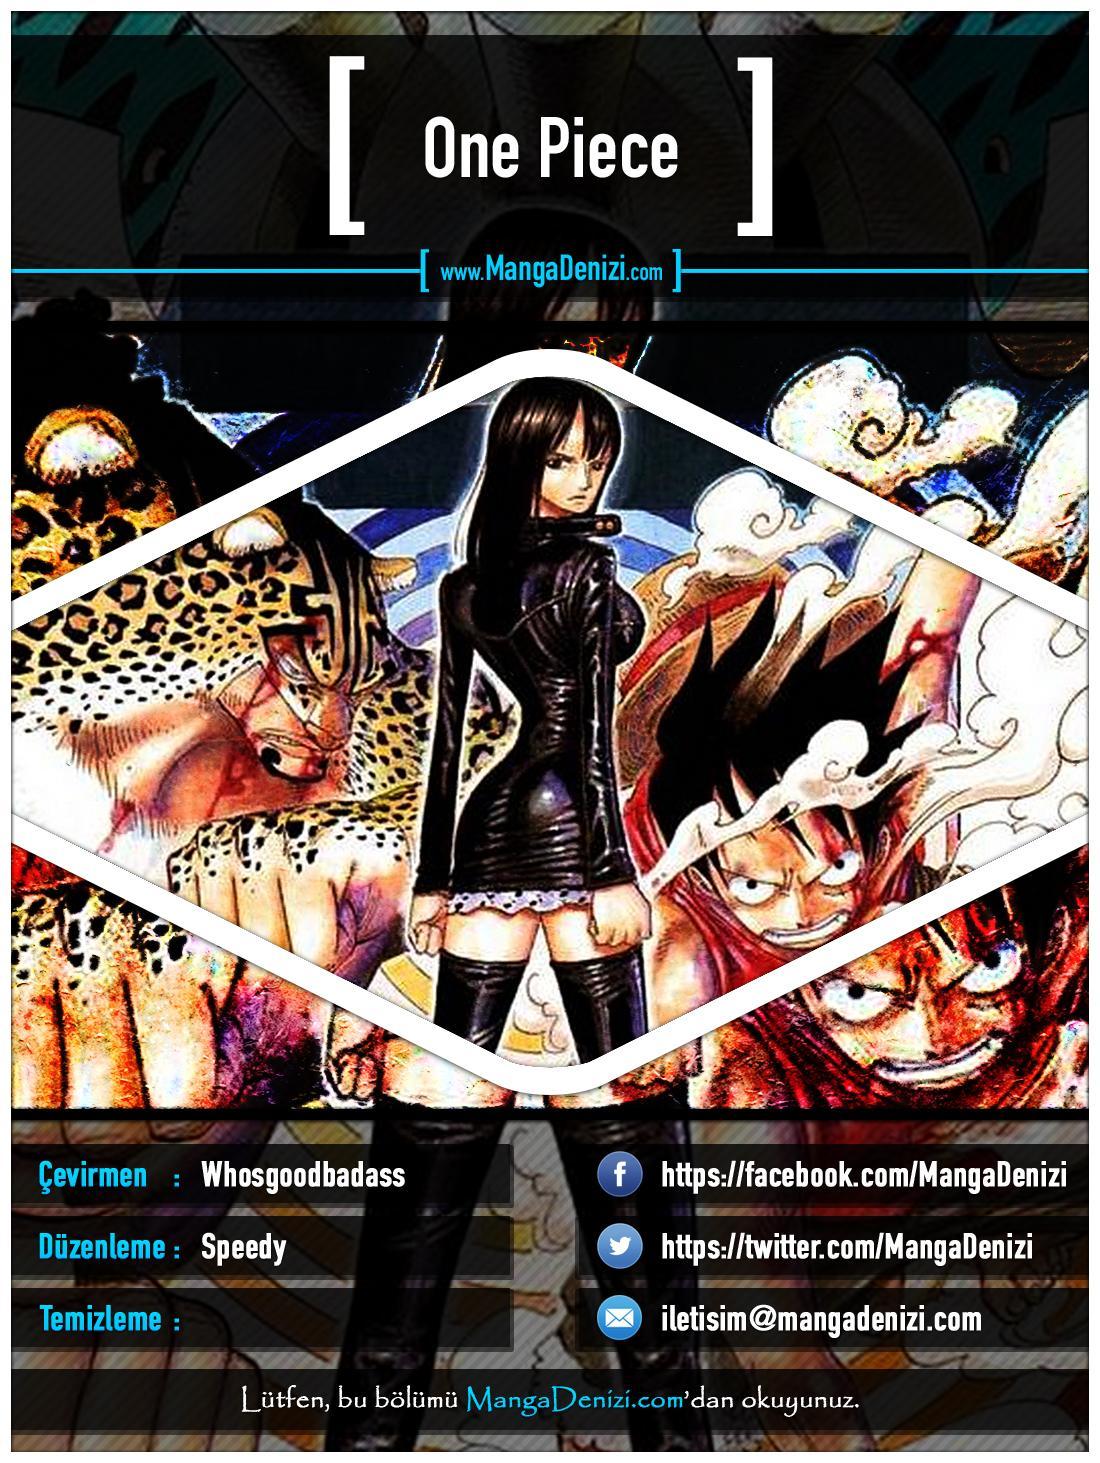 One Piece [Renkli] mangasının 0328 bölümünün 1. sayfasını okuyorsunuz.